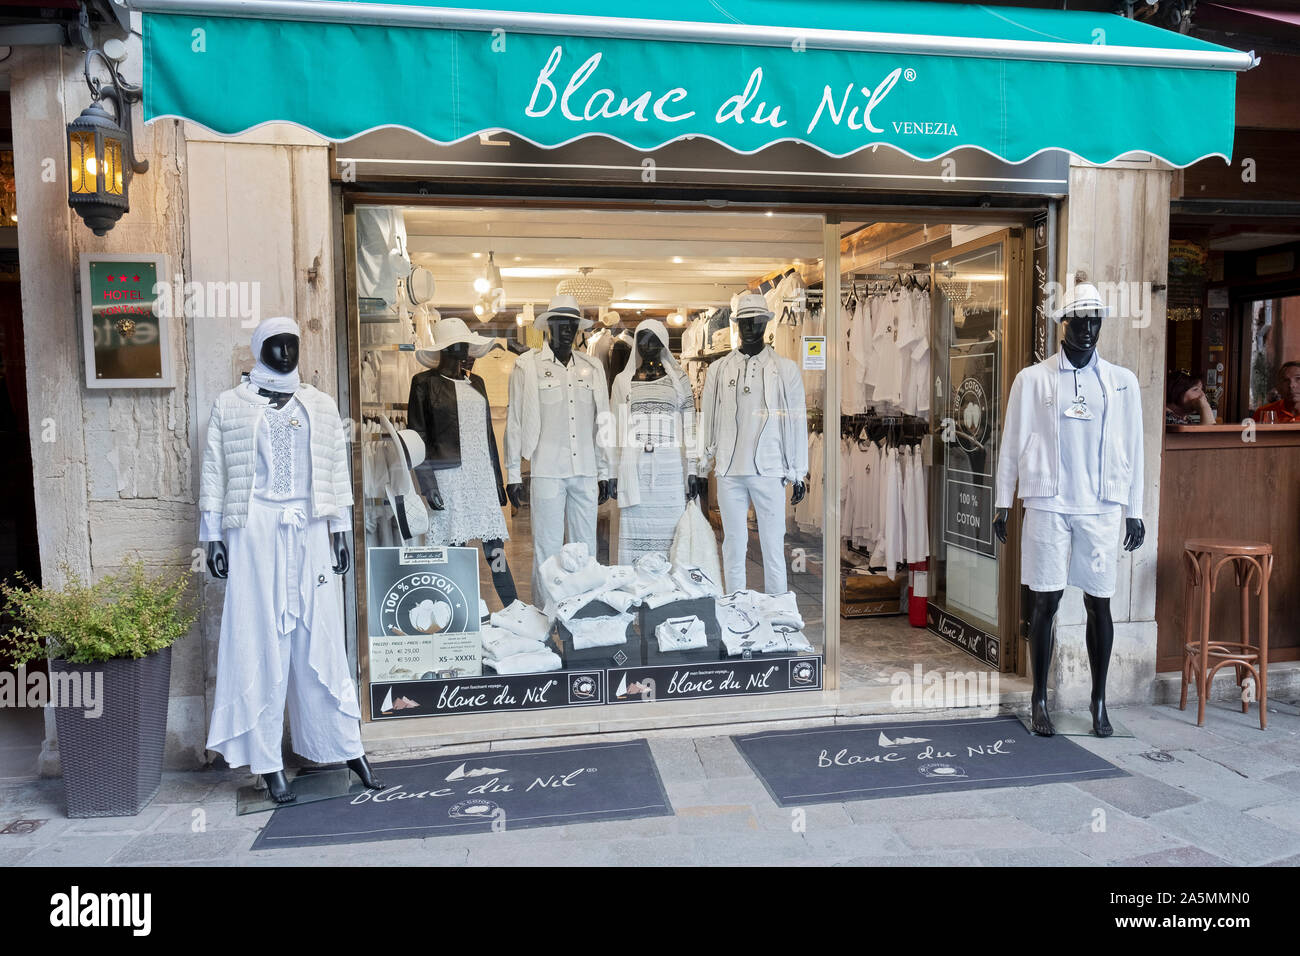 L'extérieur du Blanc du Nil magasin de vêtements pour femmes dans compo S. Provolo à Venise, Italie. Ils vendent tous les vêtements blancs. Banque D'Images